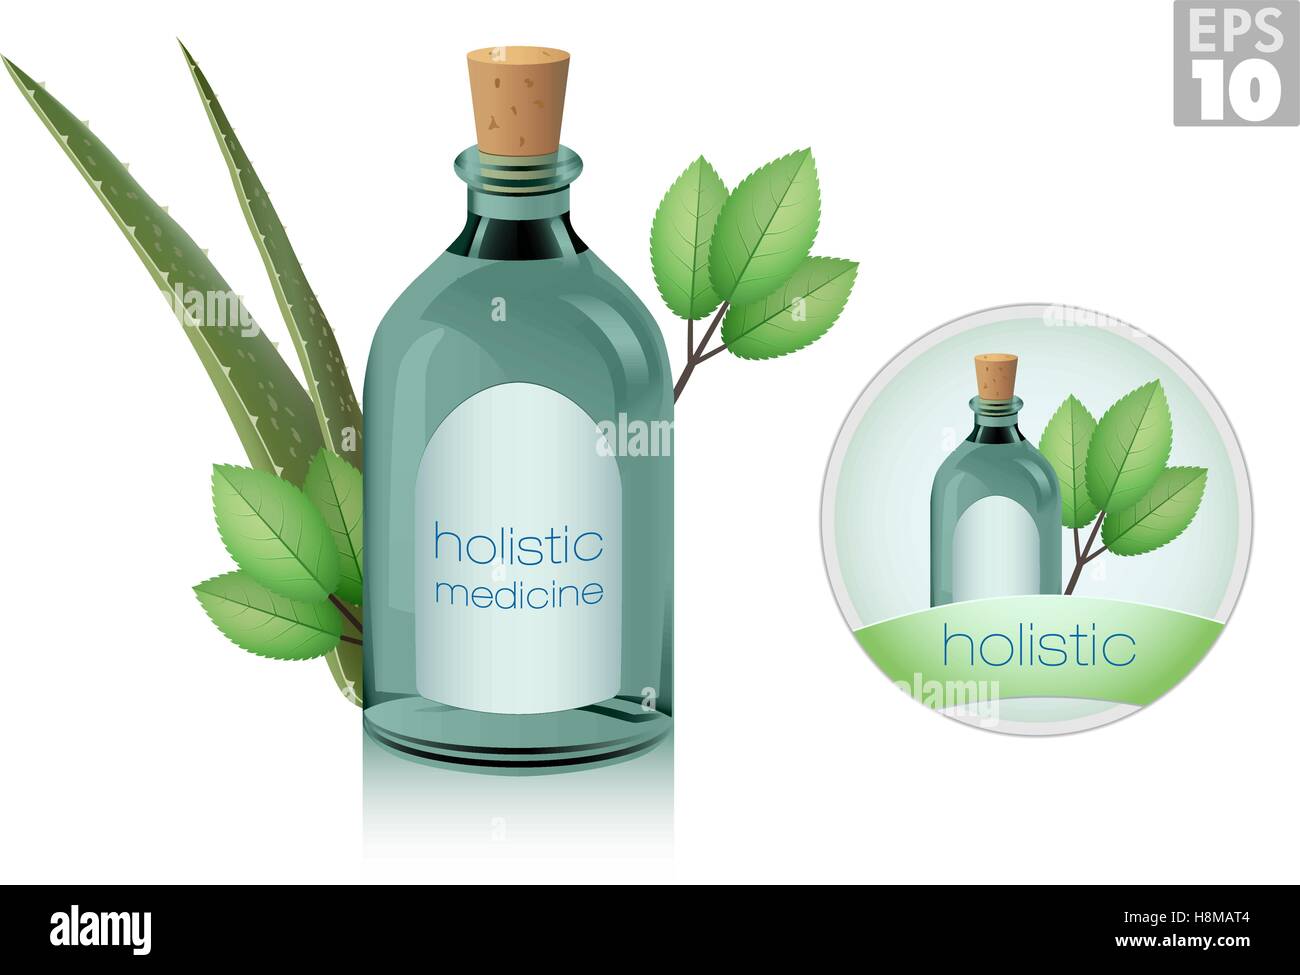 Glas-Medizin-Flaschen mit Korken, Aloe und Ginseng Pflanzen, ganzheitliche oder Alternativmedizin Stock Vektor